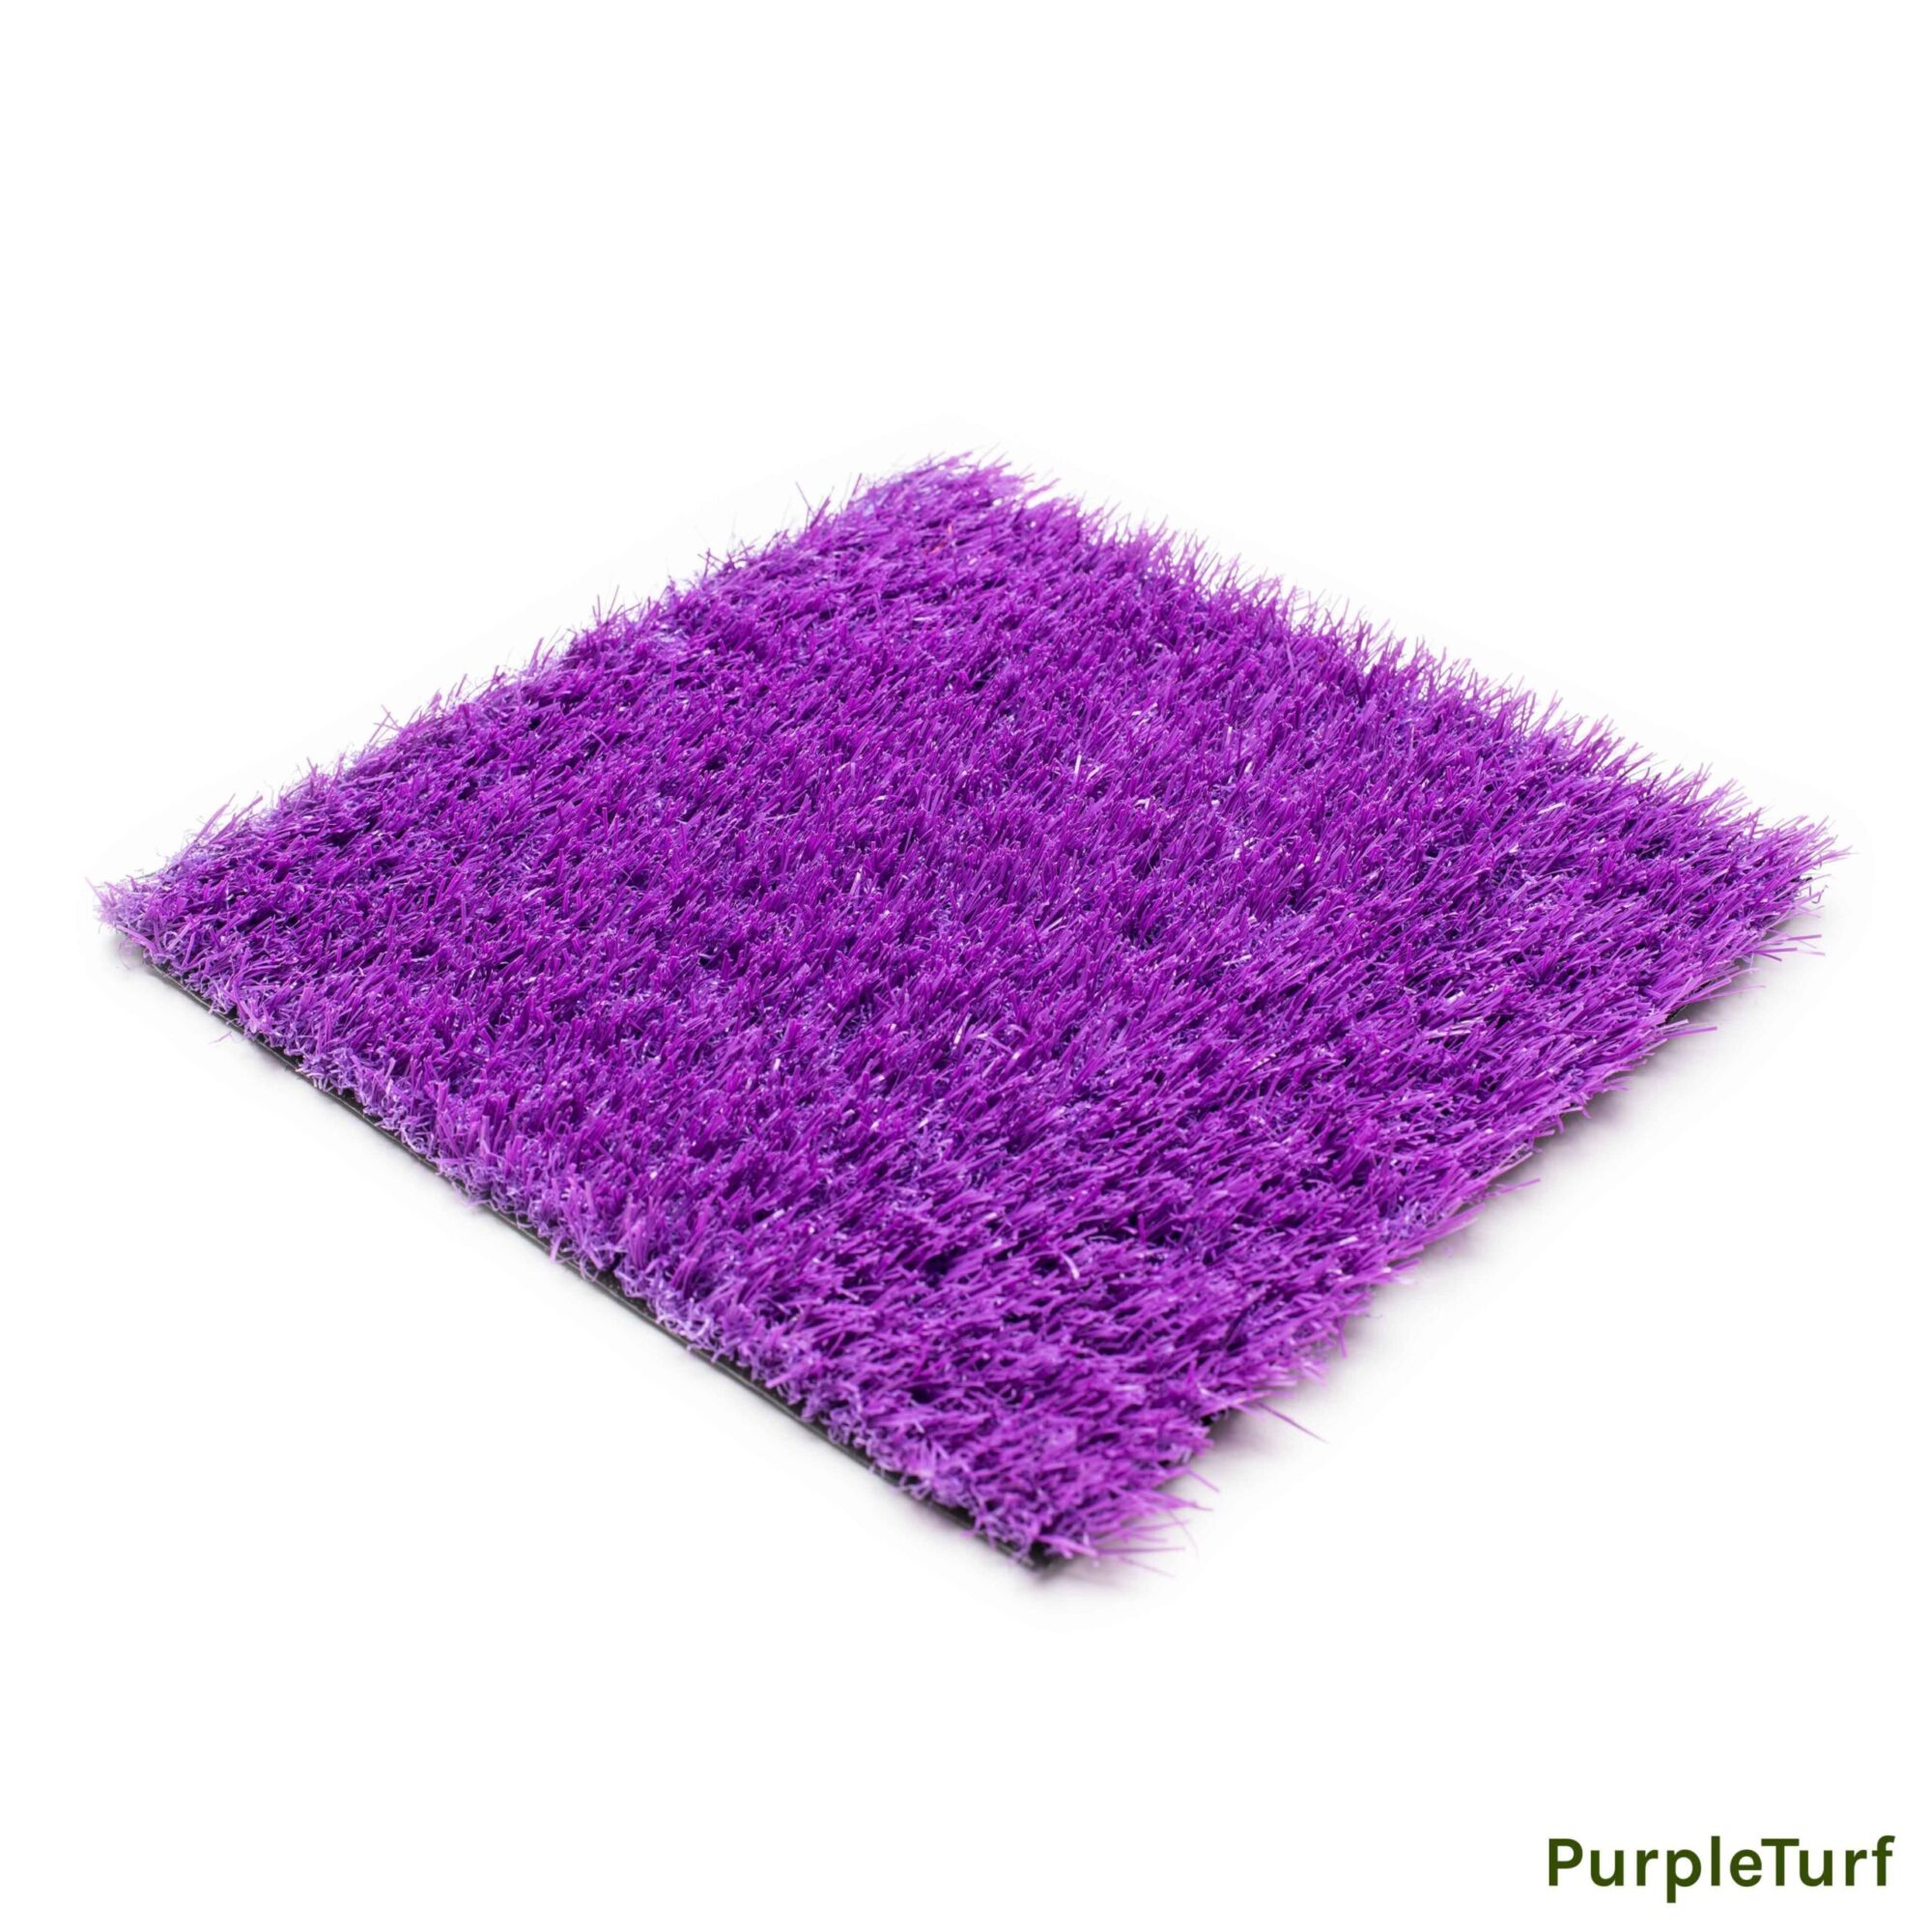 PurpleTurf